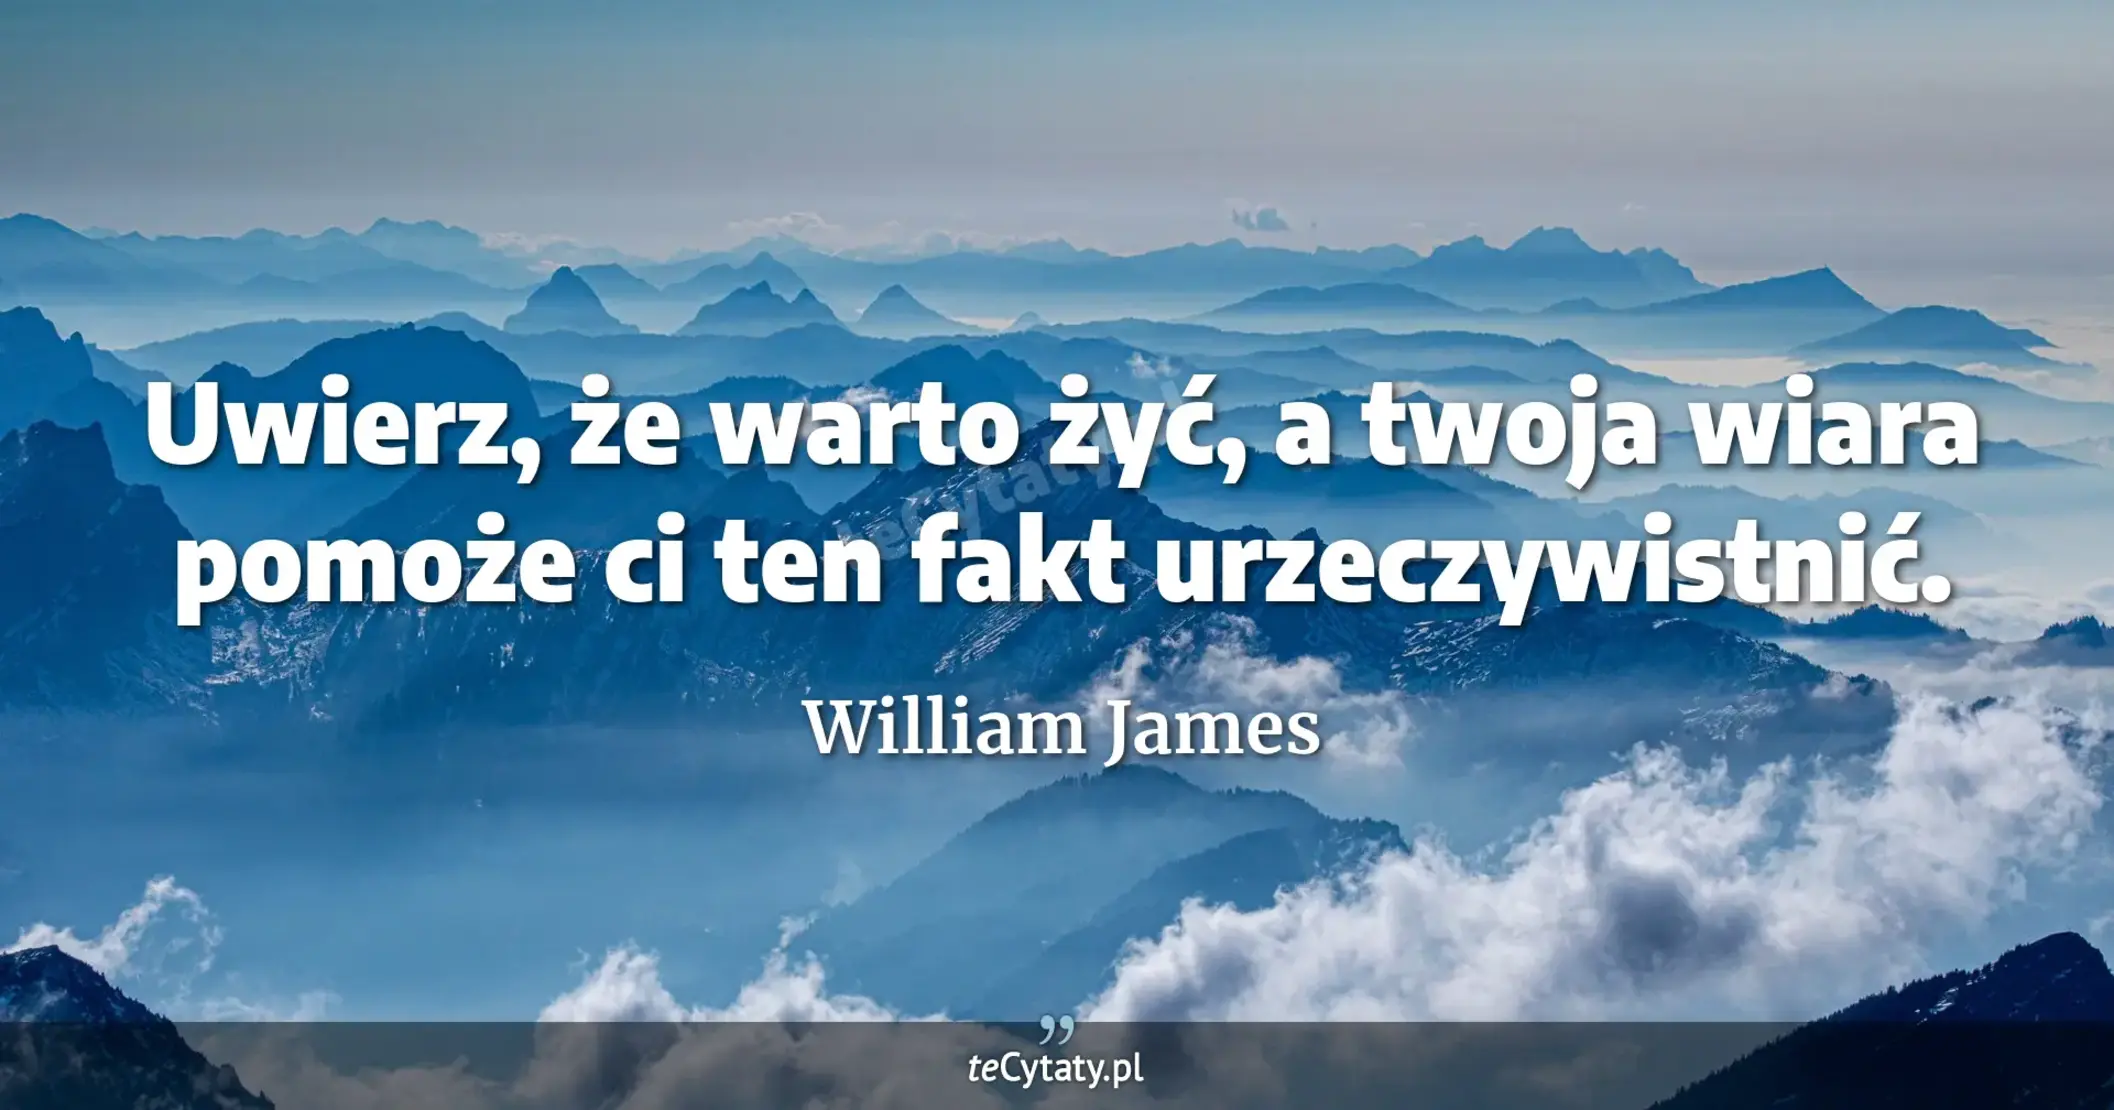 Uwierz, że warto żyć, a twoja wiara pomoże ci ten fakt urzeczywistnić. - William James